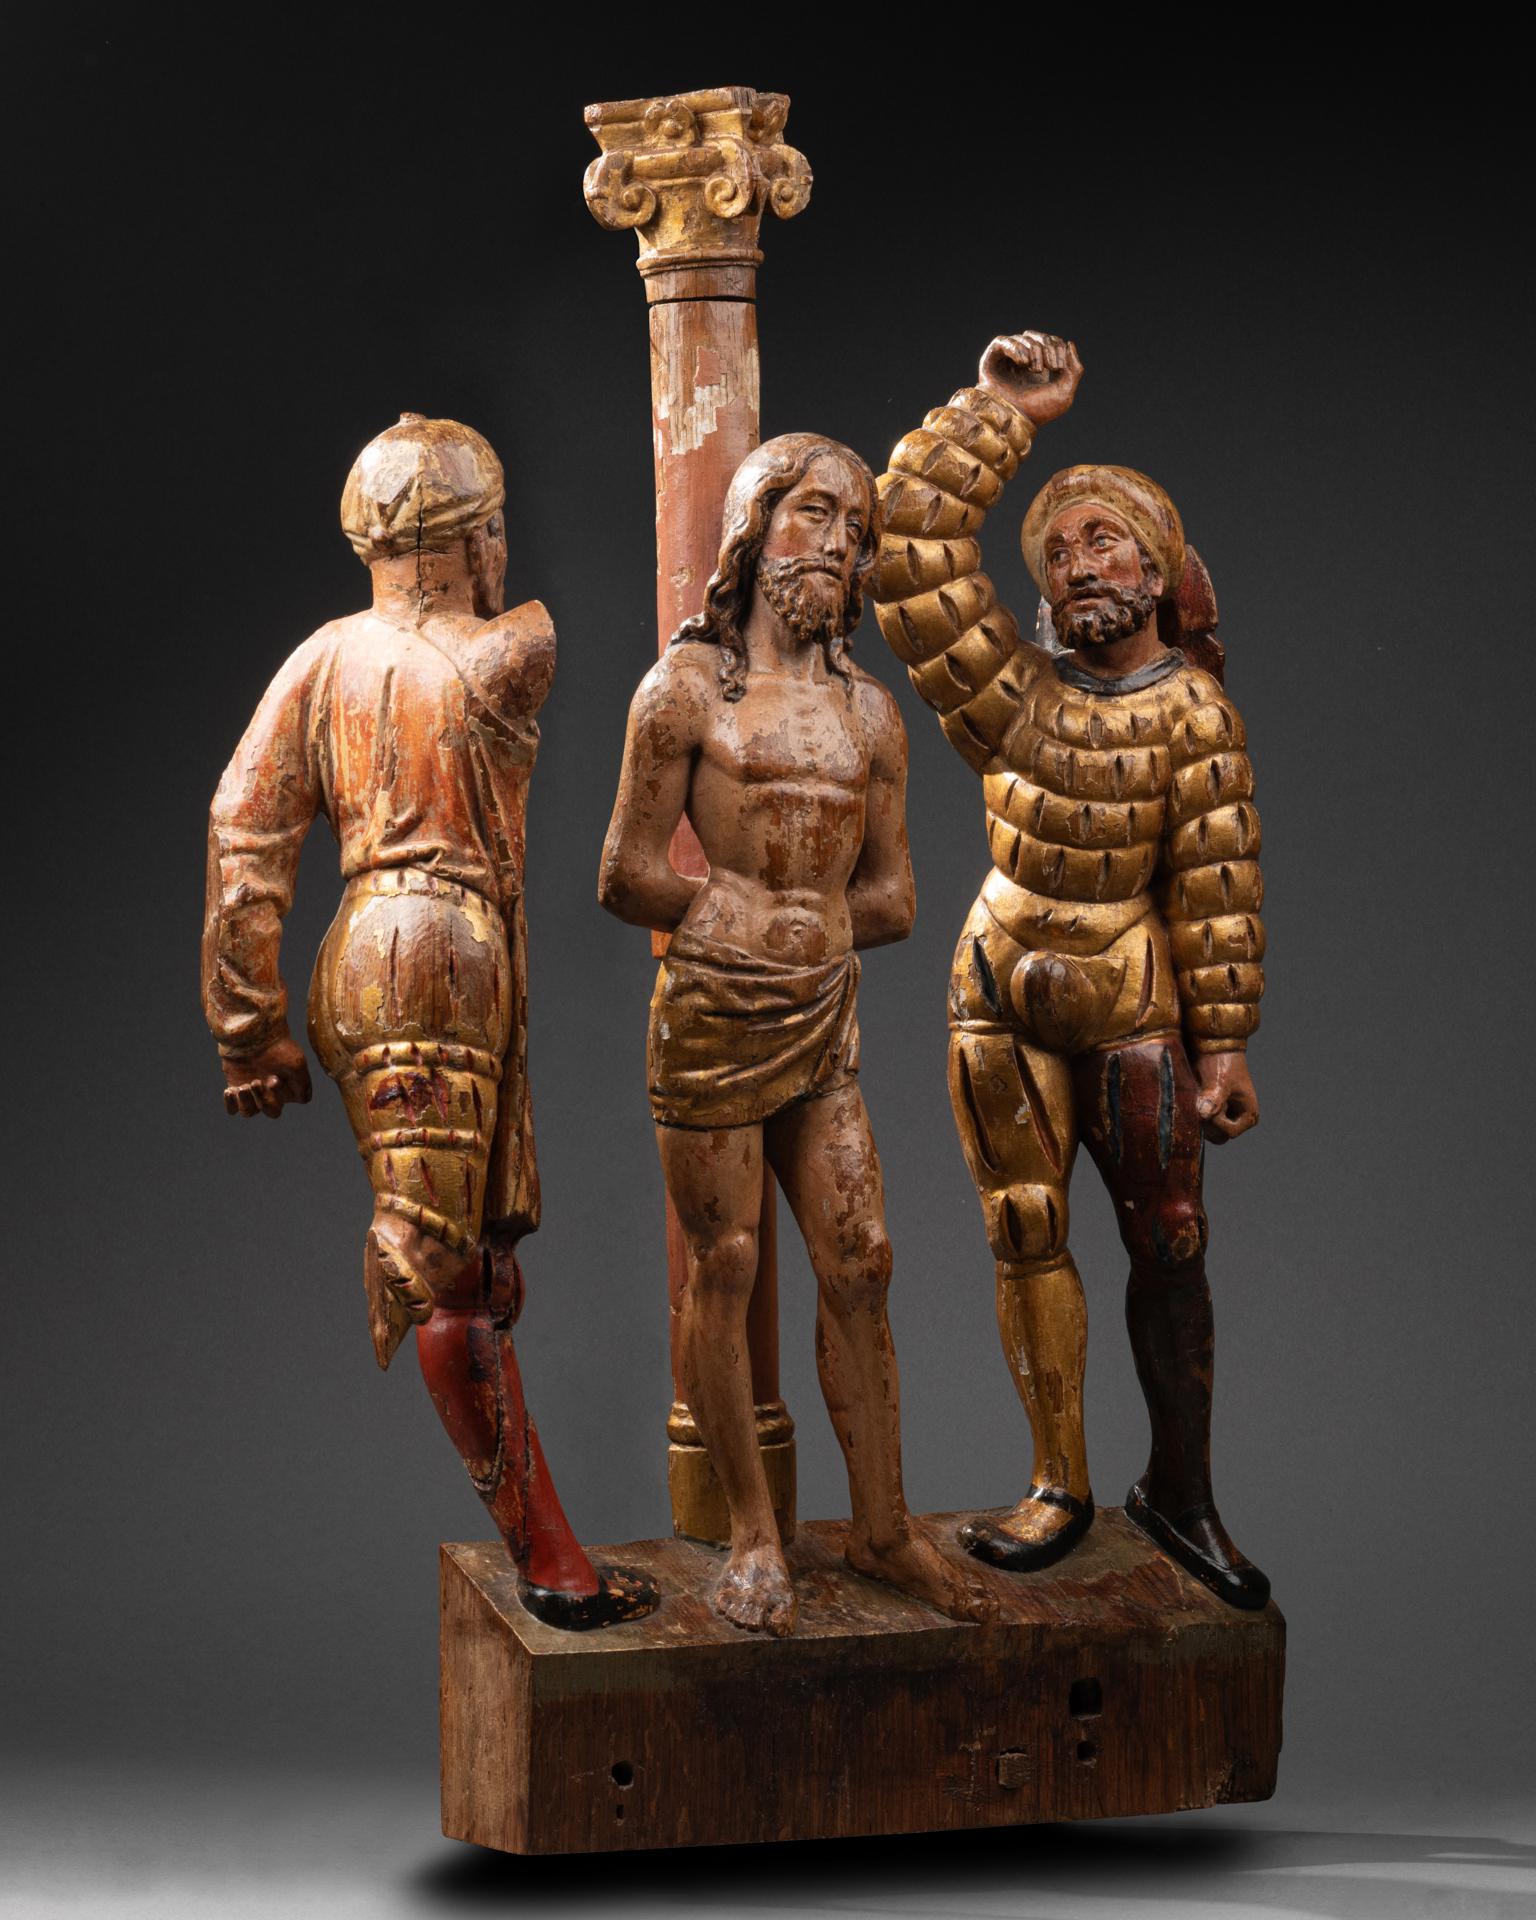 Groupe du retable représentant la flagellation
Brabant, vers 1560-1580
Bois sculpté, polychrome et doré
50 x 38 x 7 cm

Au centre du groupe, le Christ se tient debout, adossé à la colonne, les poignets liés dans le dos, la jambe gauche légèrement